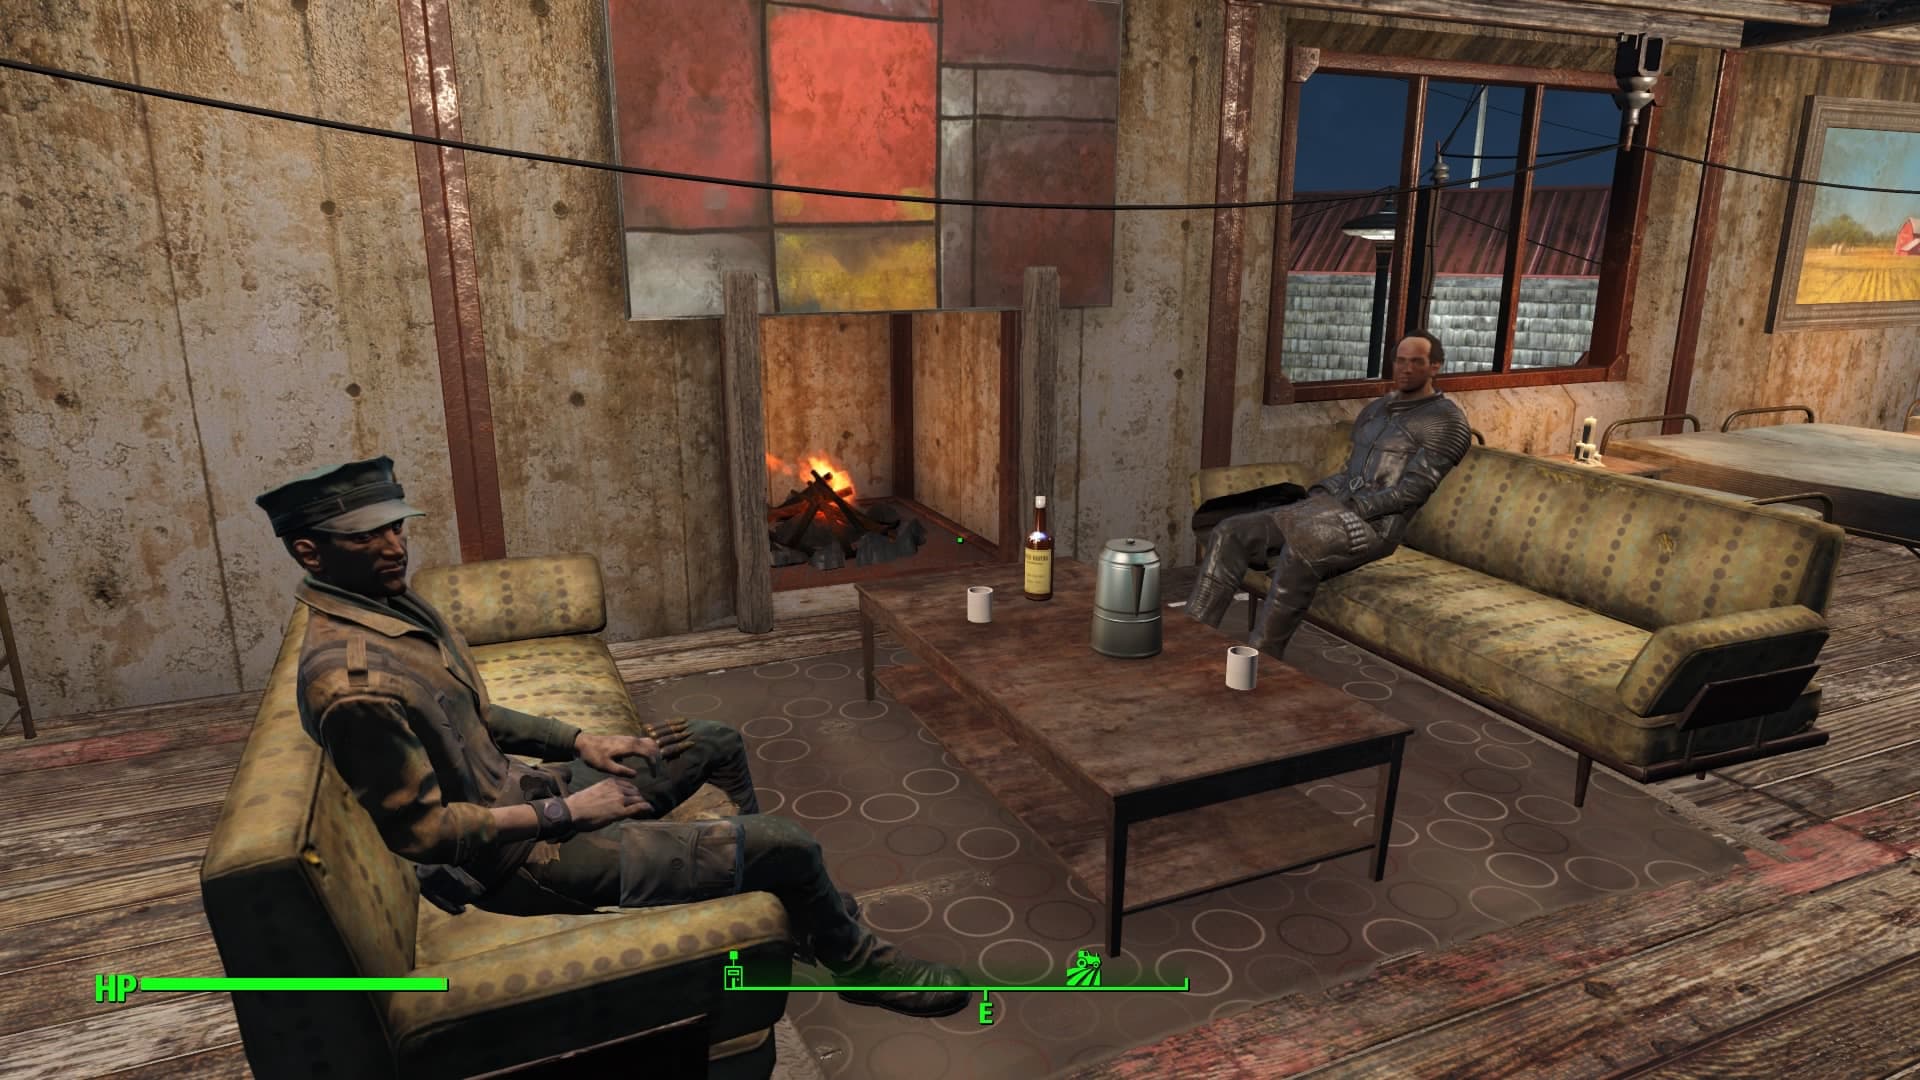 Fallout4 クラフト 家に暖炉と煙突を作りました キャンプファイヤーとコンクリートの床 壁を使います あまげー